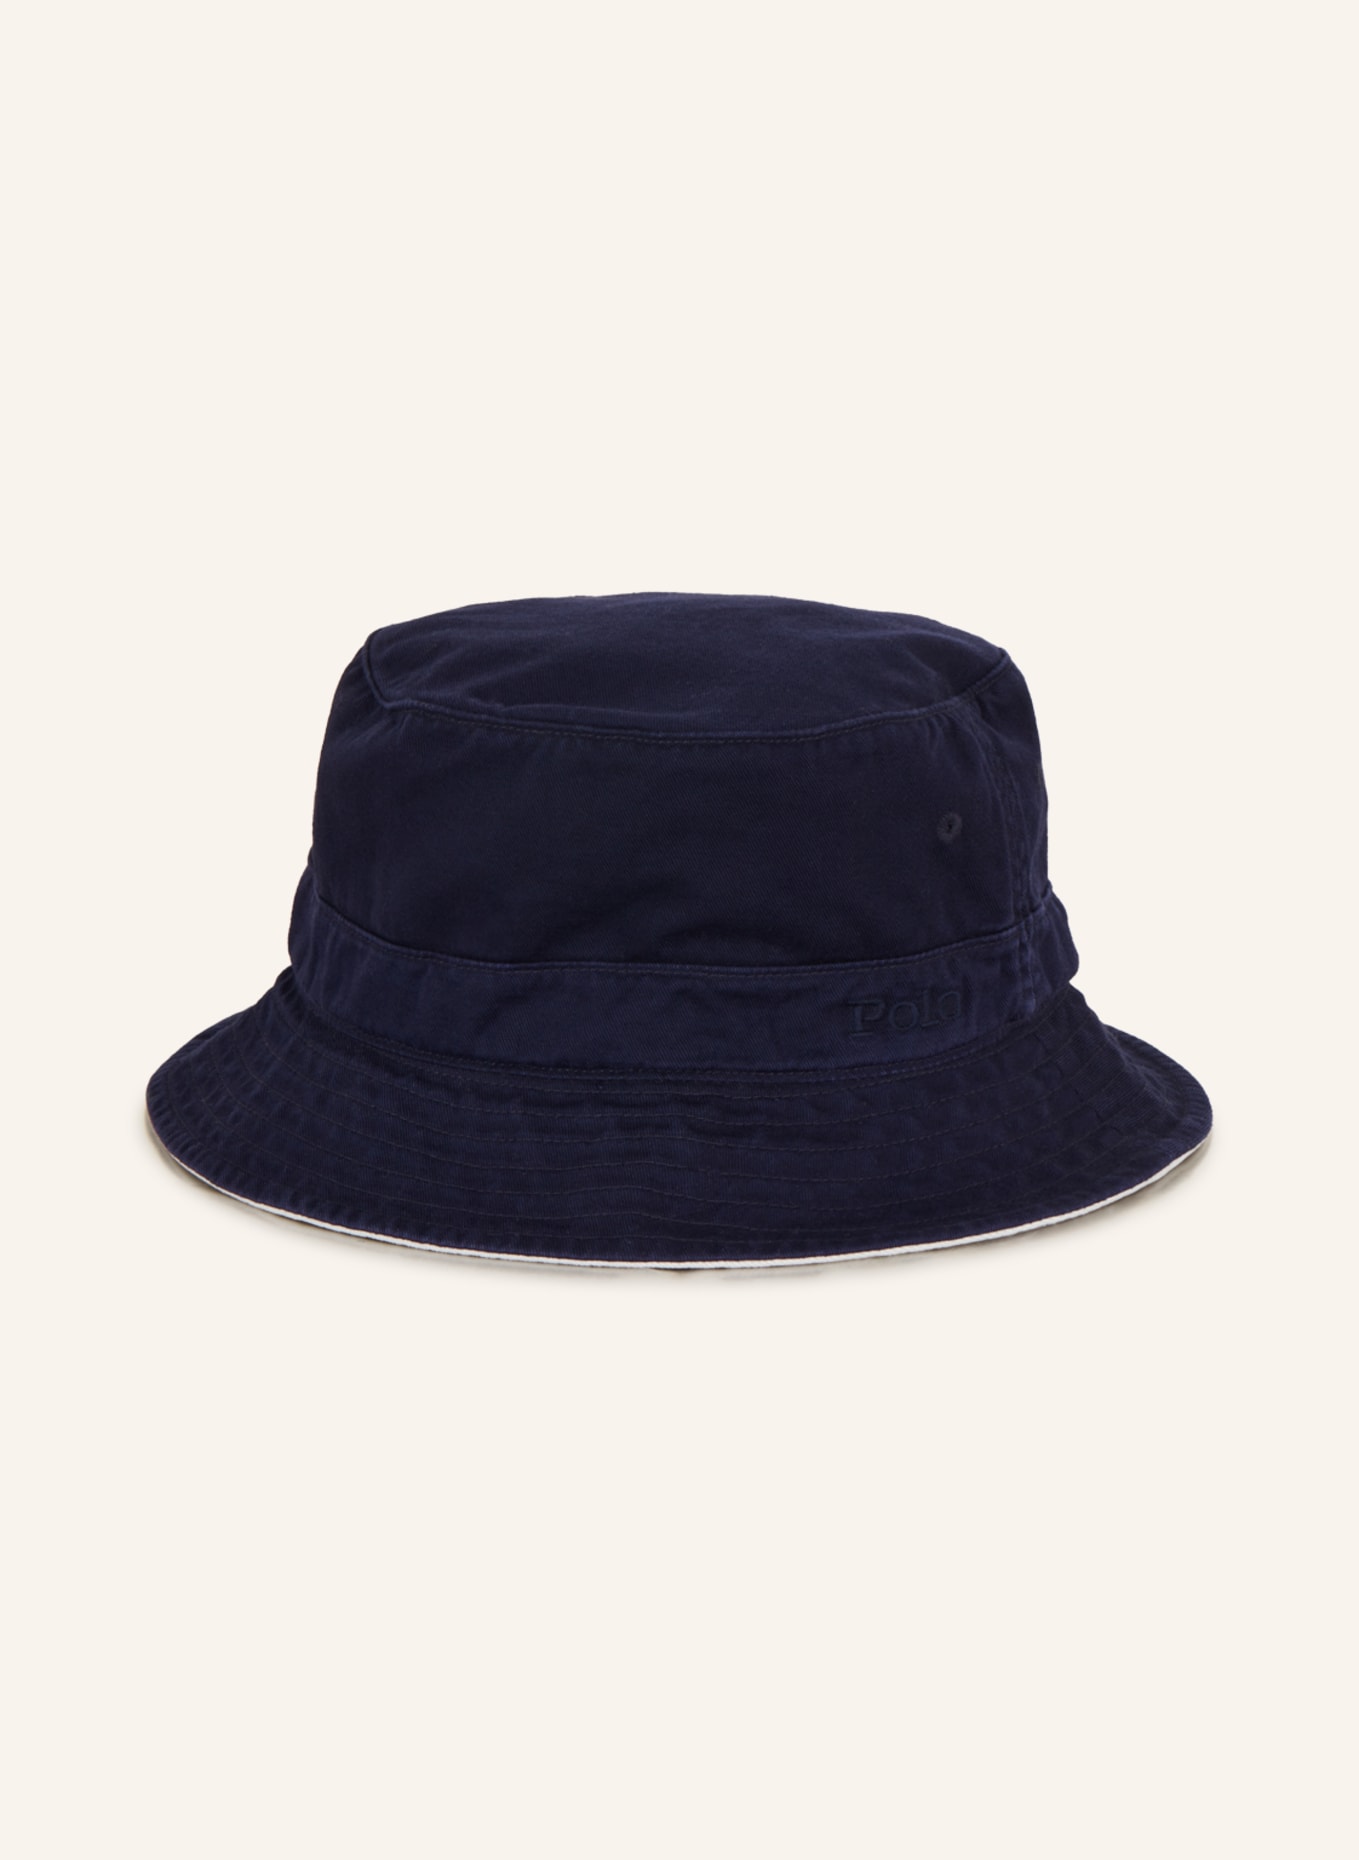 POLO RALPH LAUREN Bucket hat, Color: DARK BLUE (Image 2)